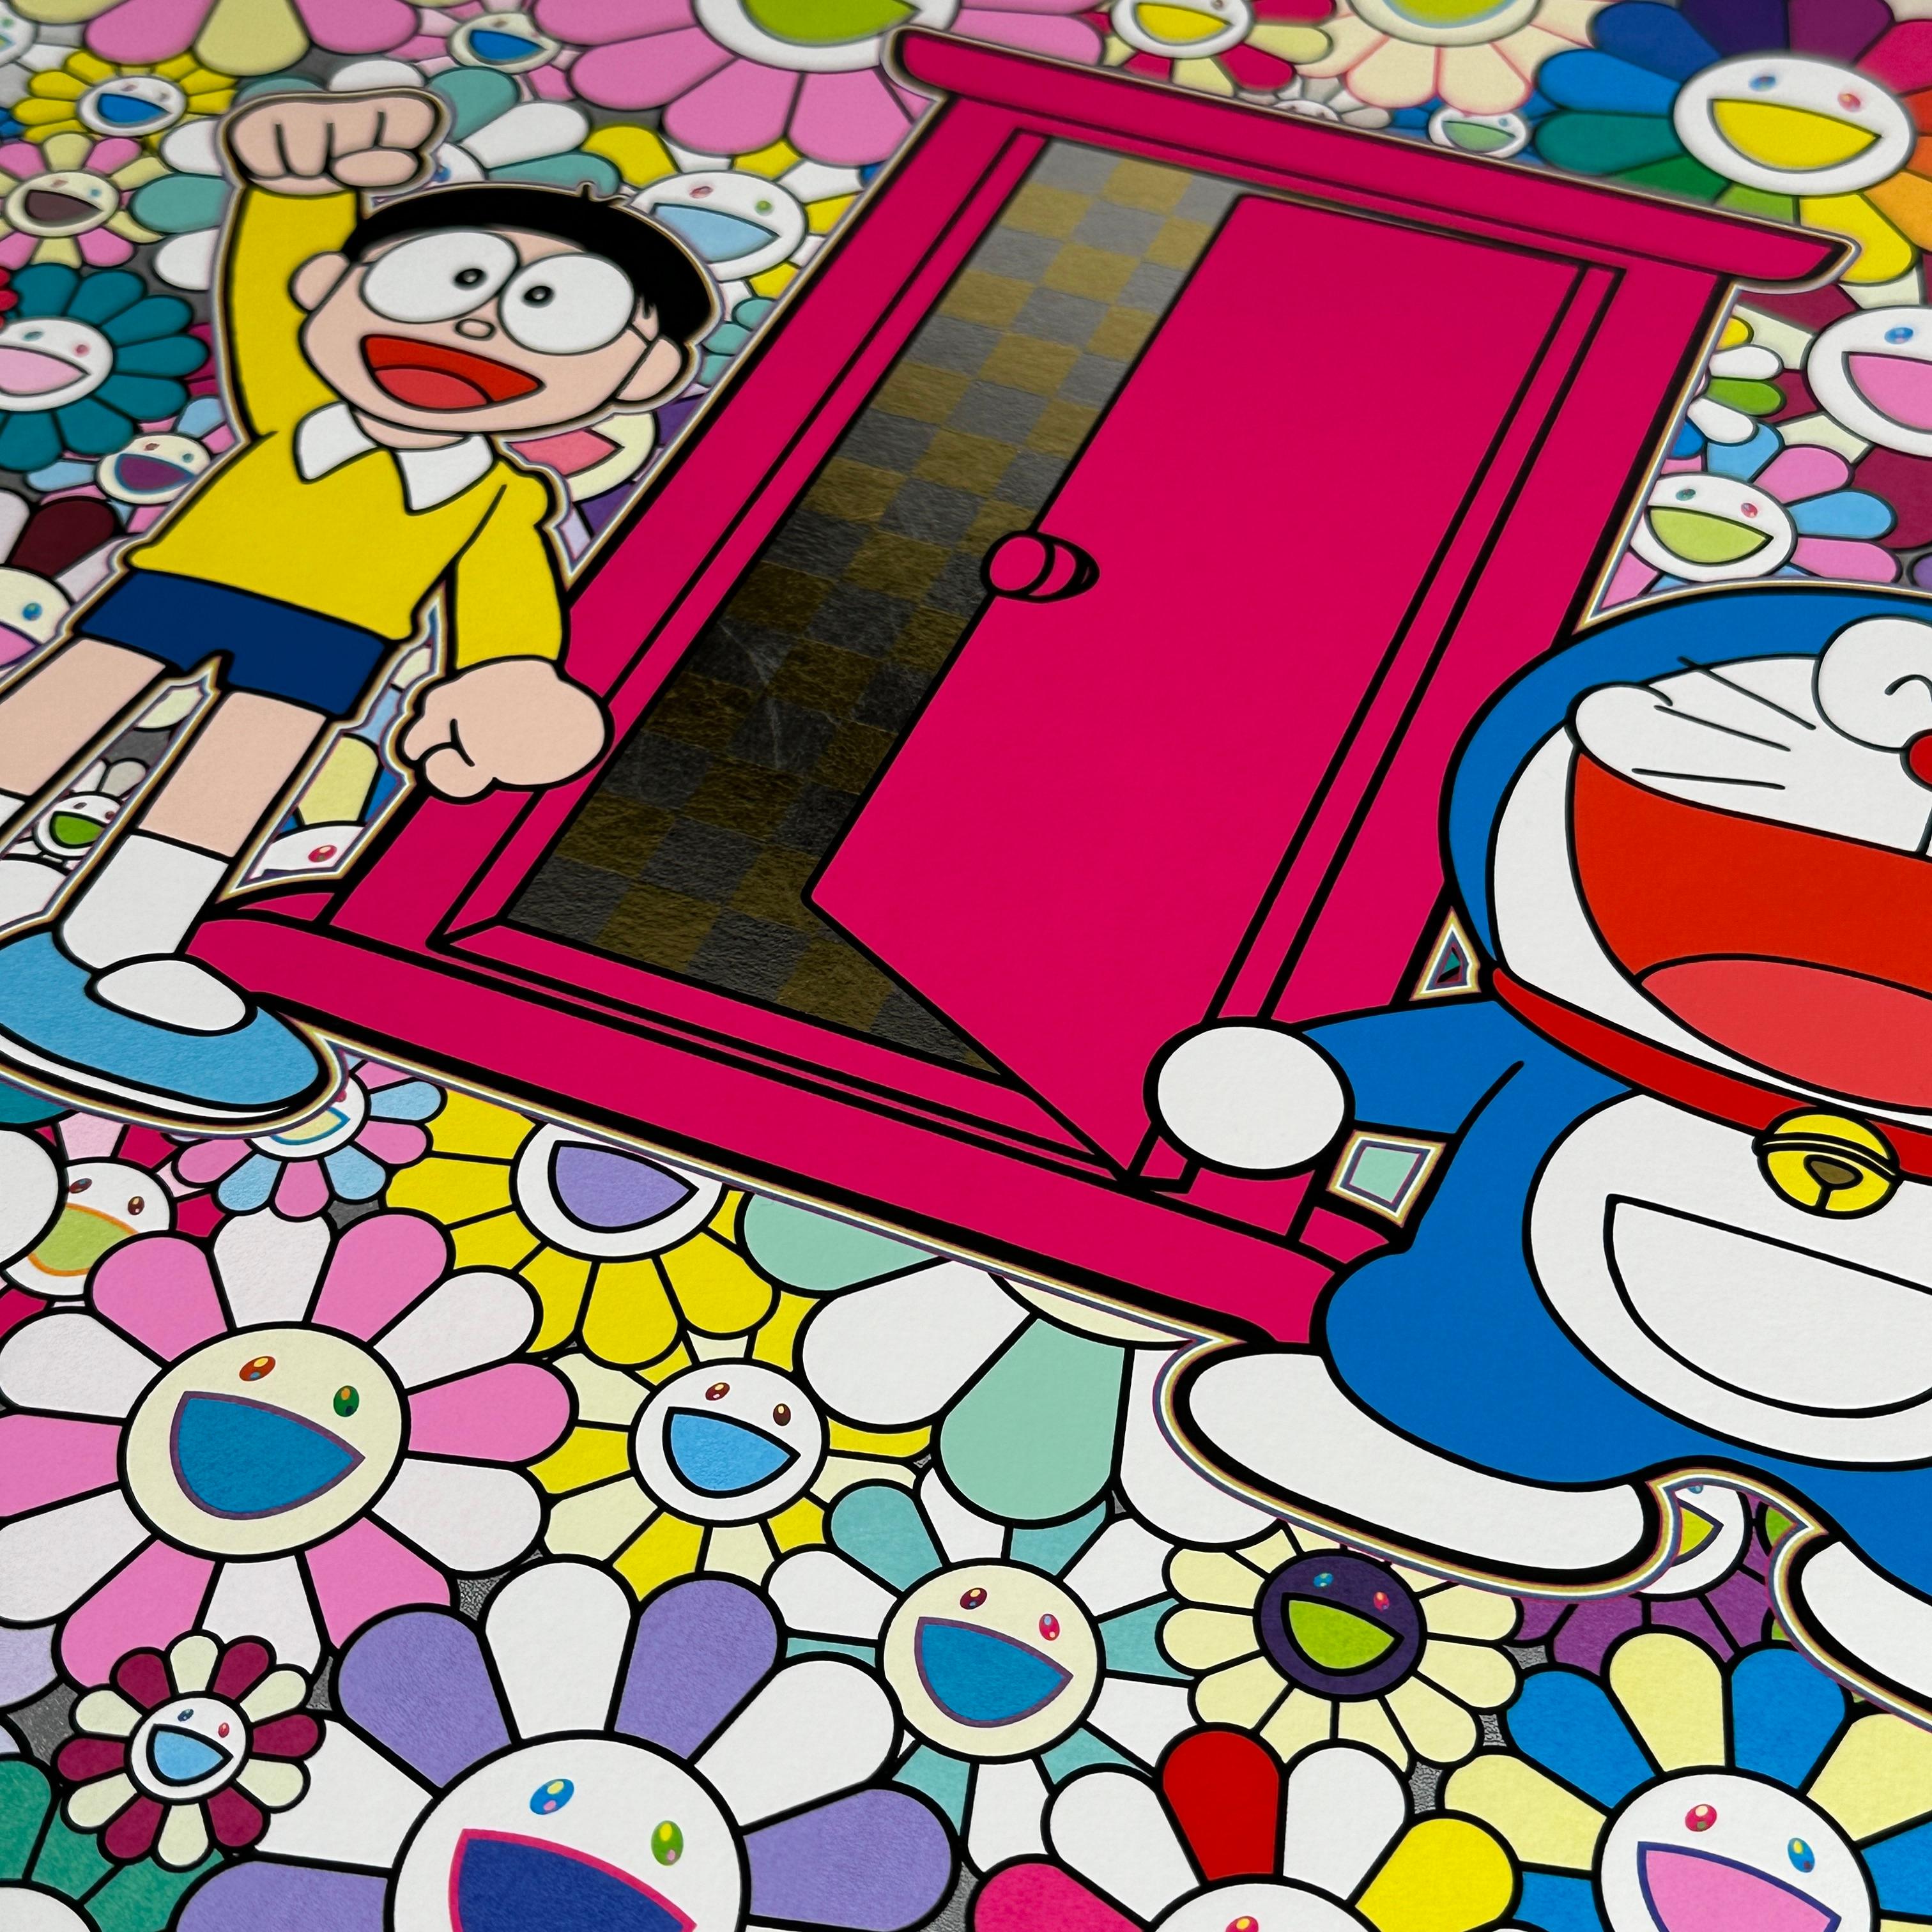 Nobita and Doraemon Amidst the Flowers (Doraemon, Murakami, Gold, Platinum) For Sale 2